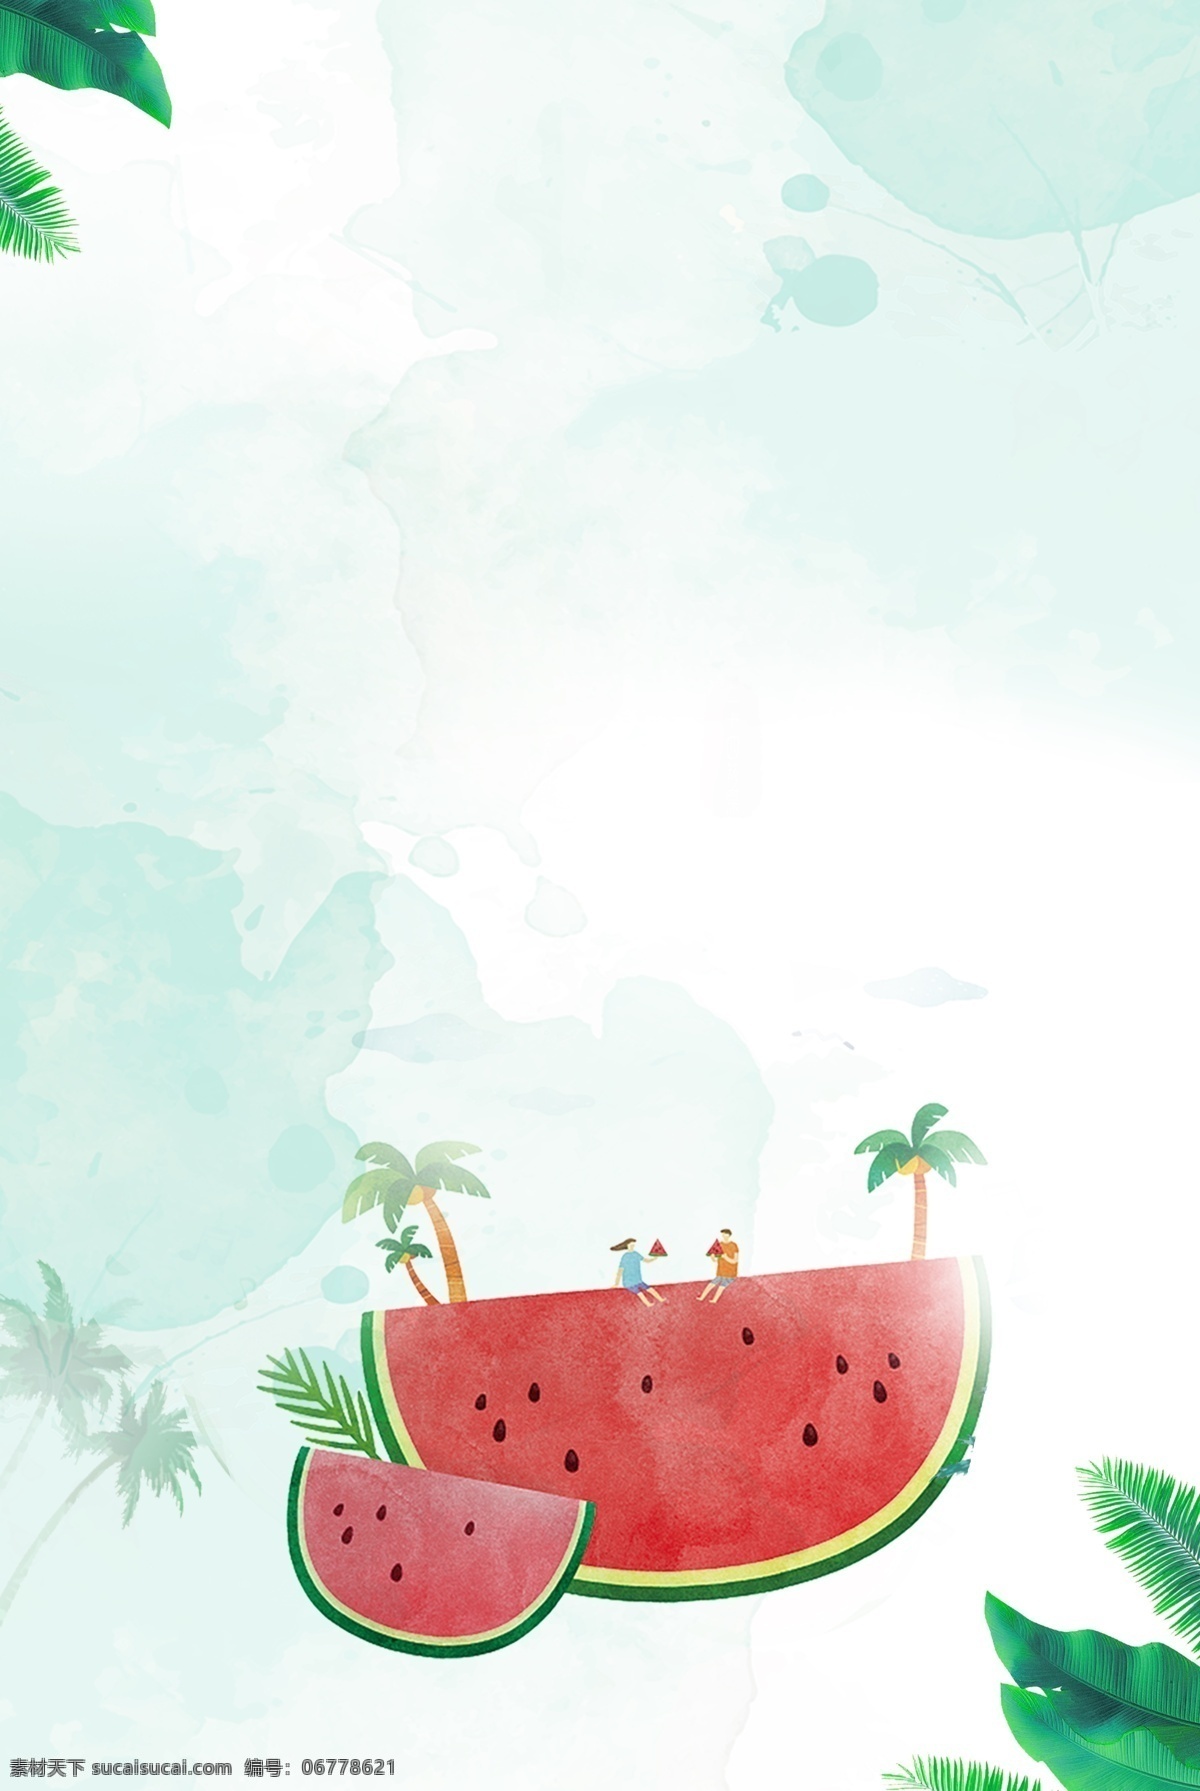 简单 水果 果汁 背景 夏天 夏季 清爽 水货 果蔬 新鲜 五月水果 冰镇 西瓜 芒果